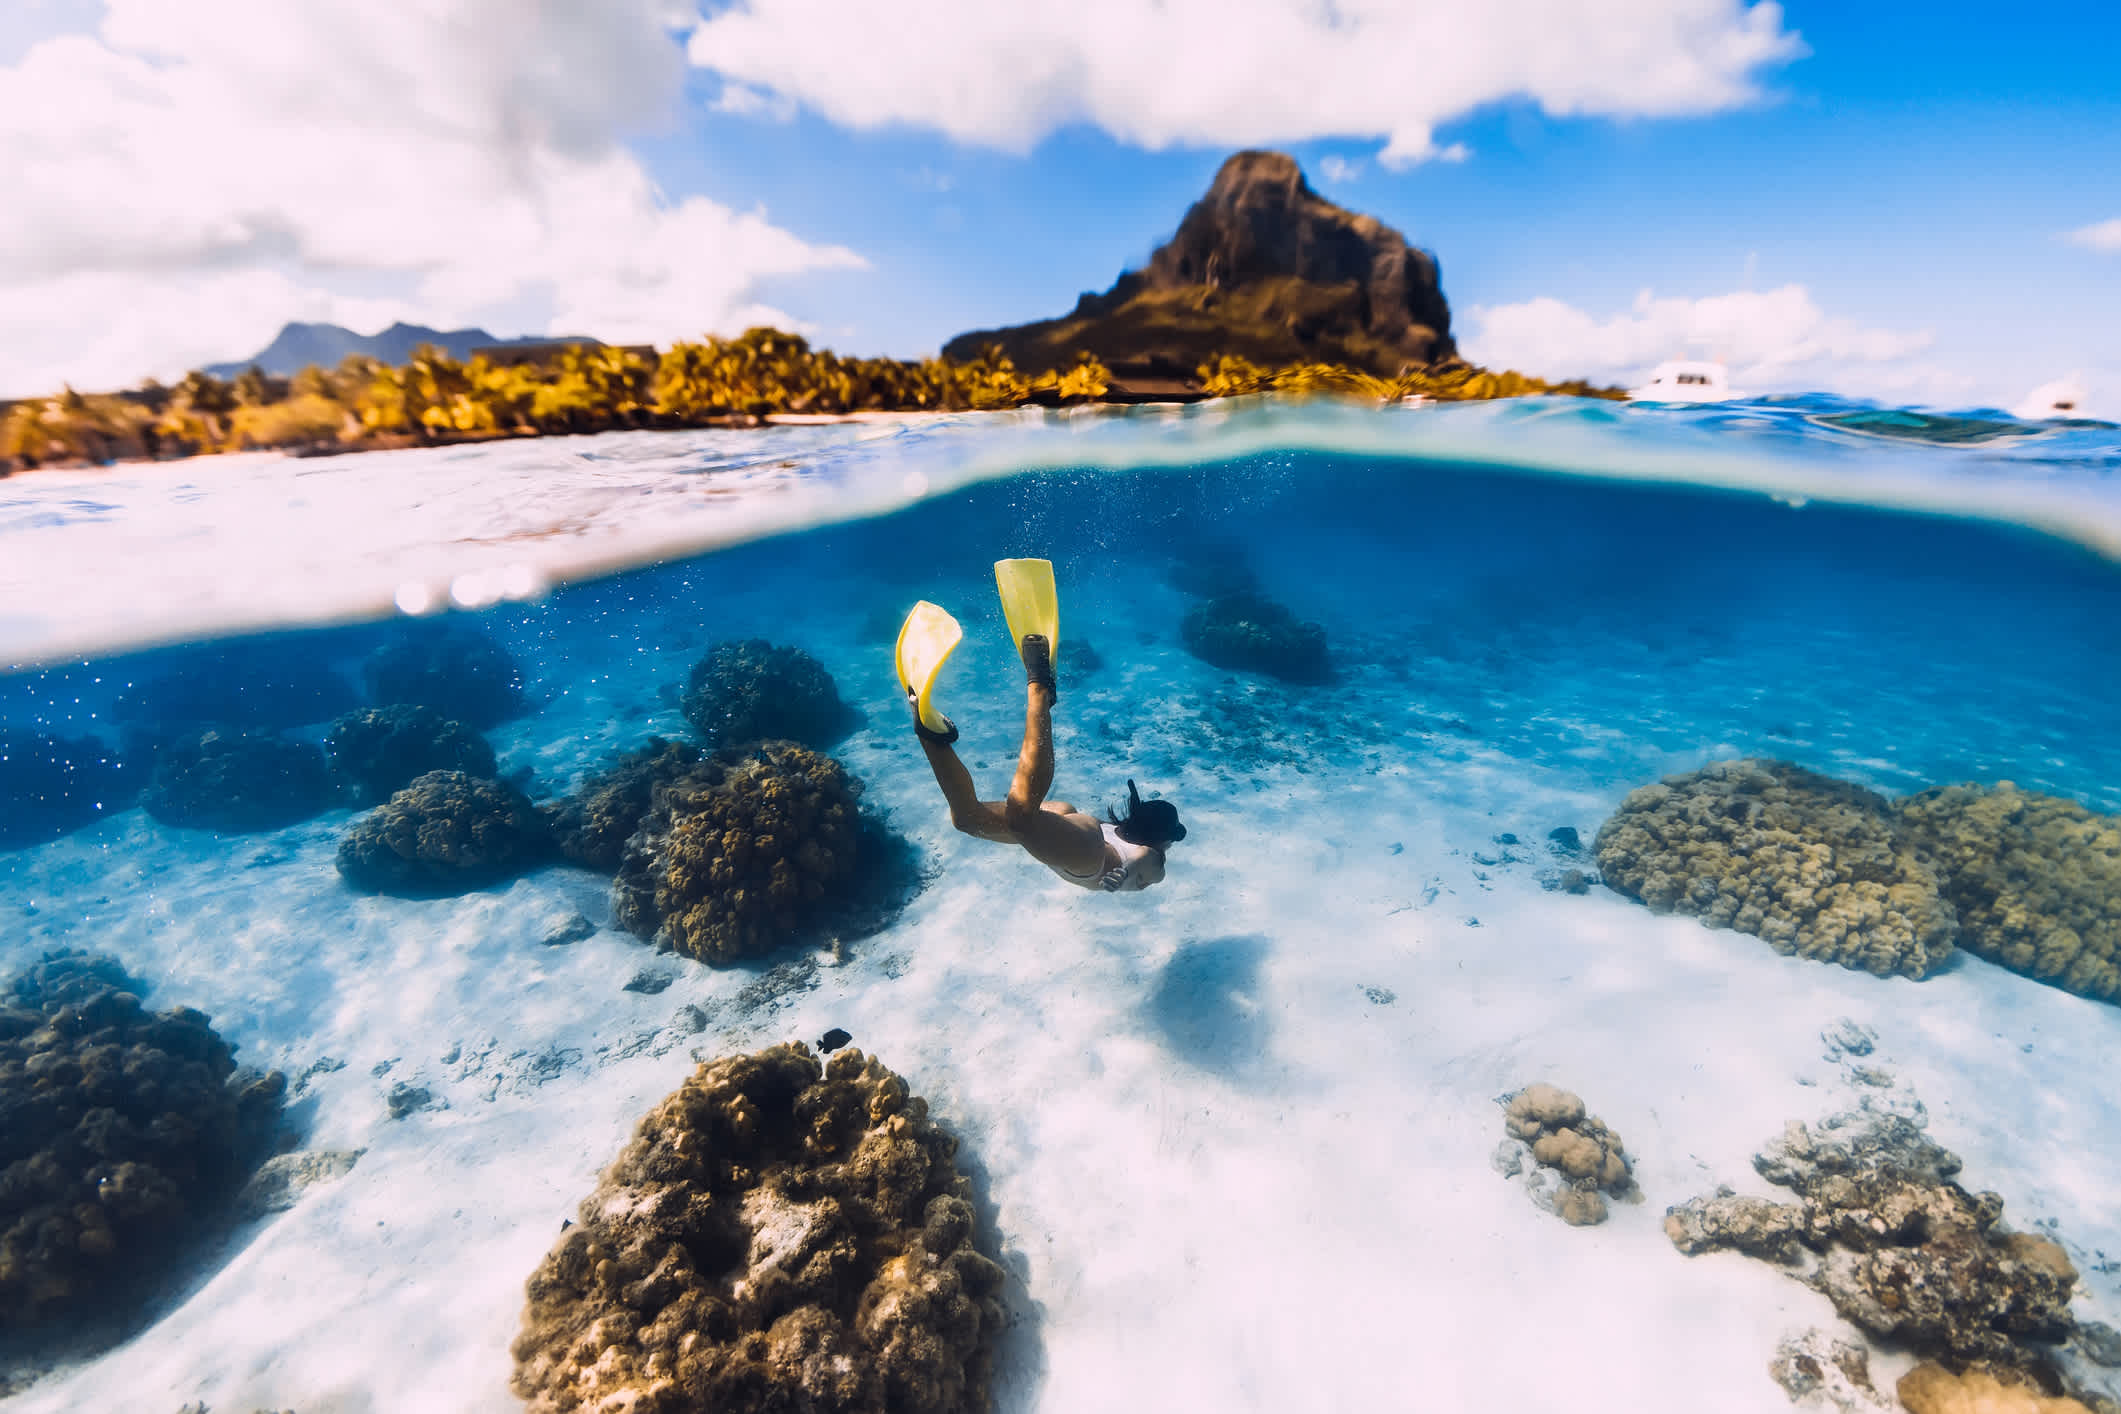 Frau Freediver gleitet über sandiges Meer mit gelben Flossen in transparentem Ozean. Freitauchen in Mauritius